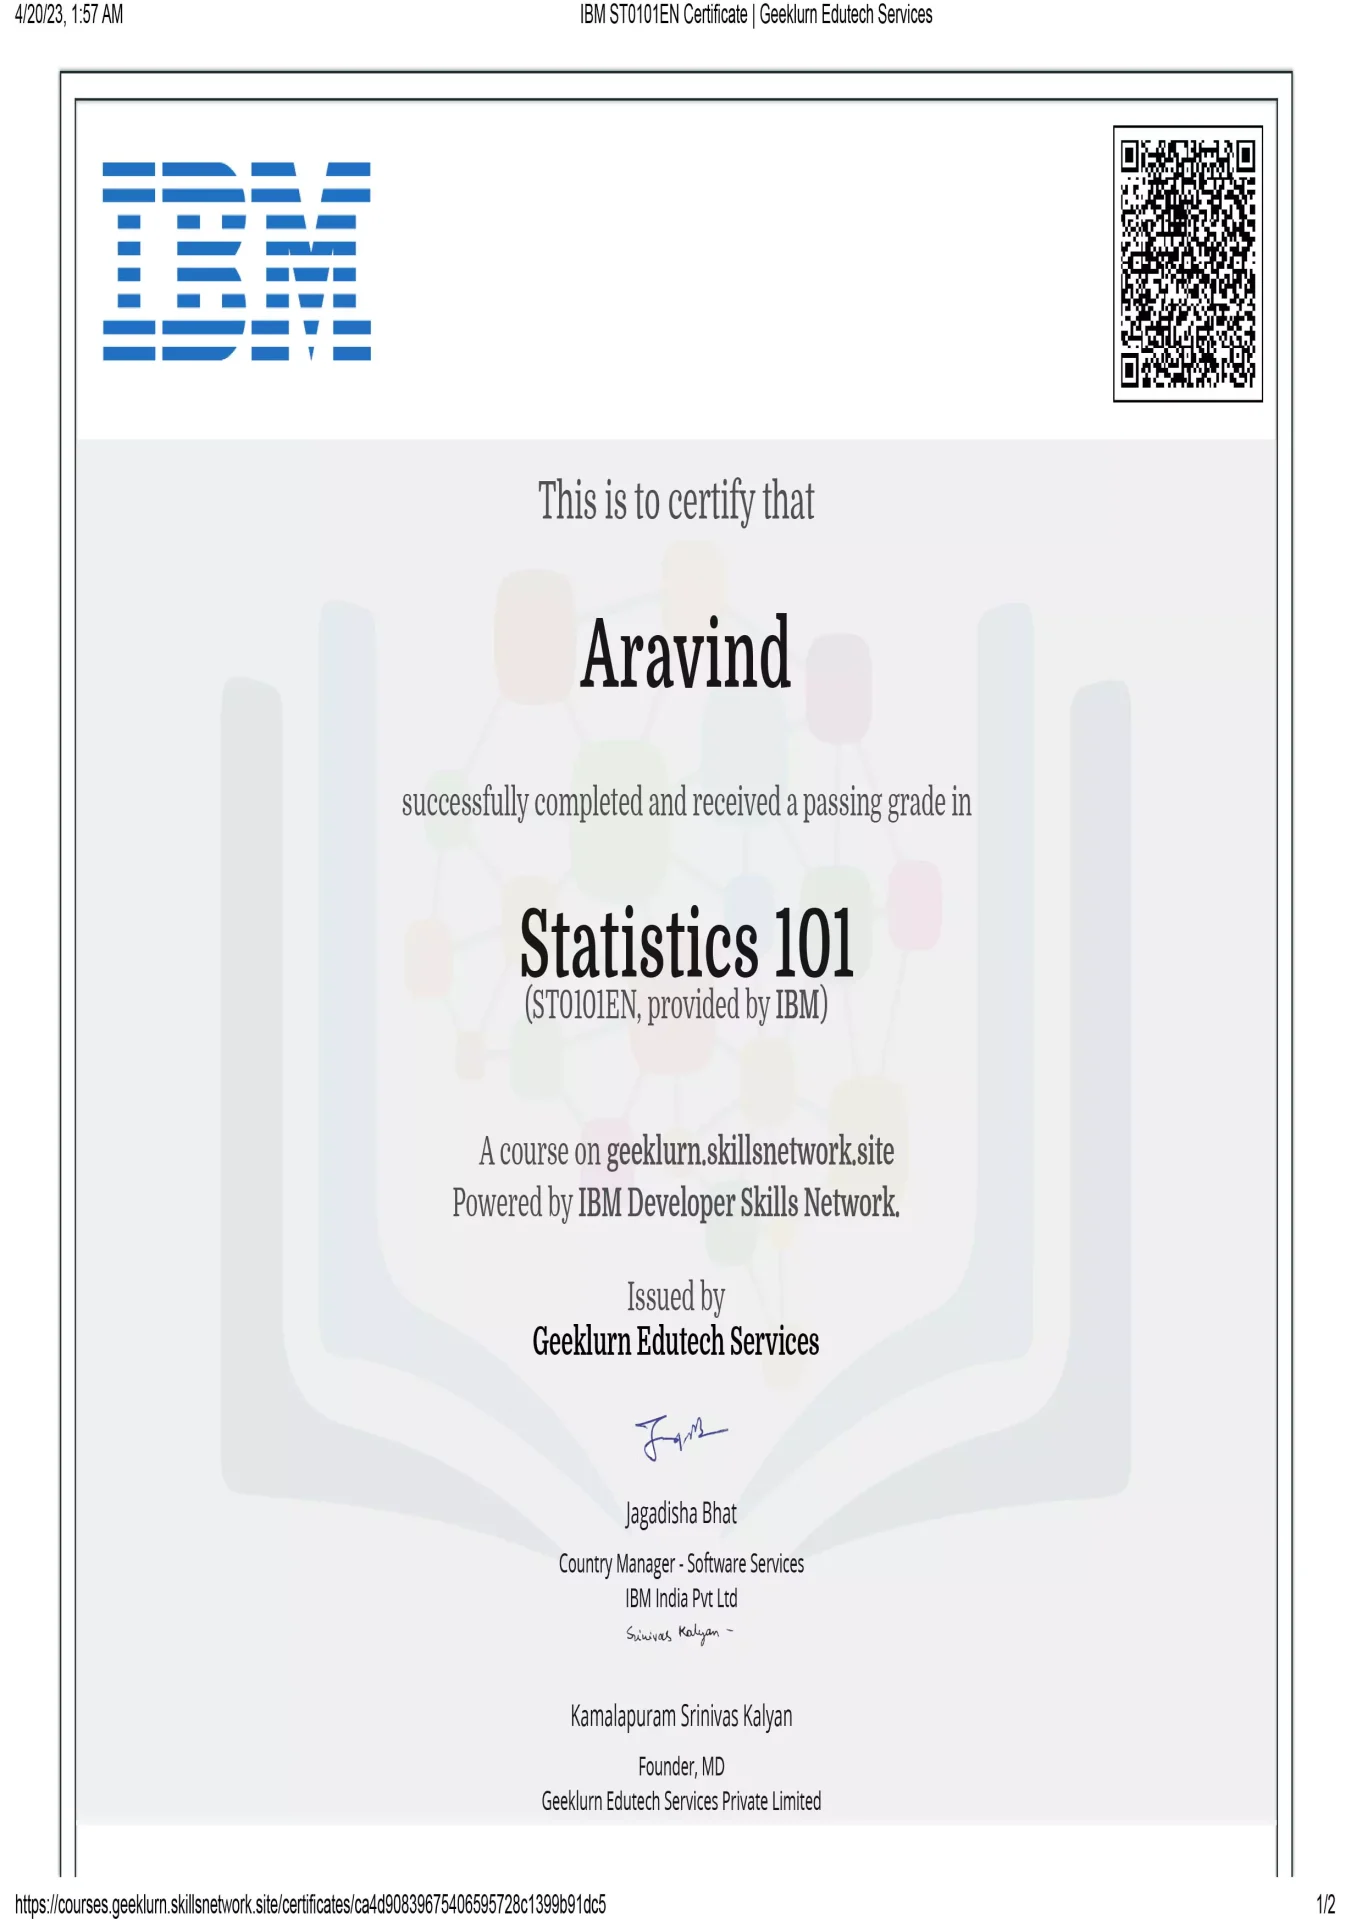 ibm-st0101en-certificate-geeklurn-edutech-services-8